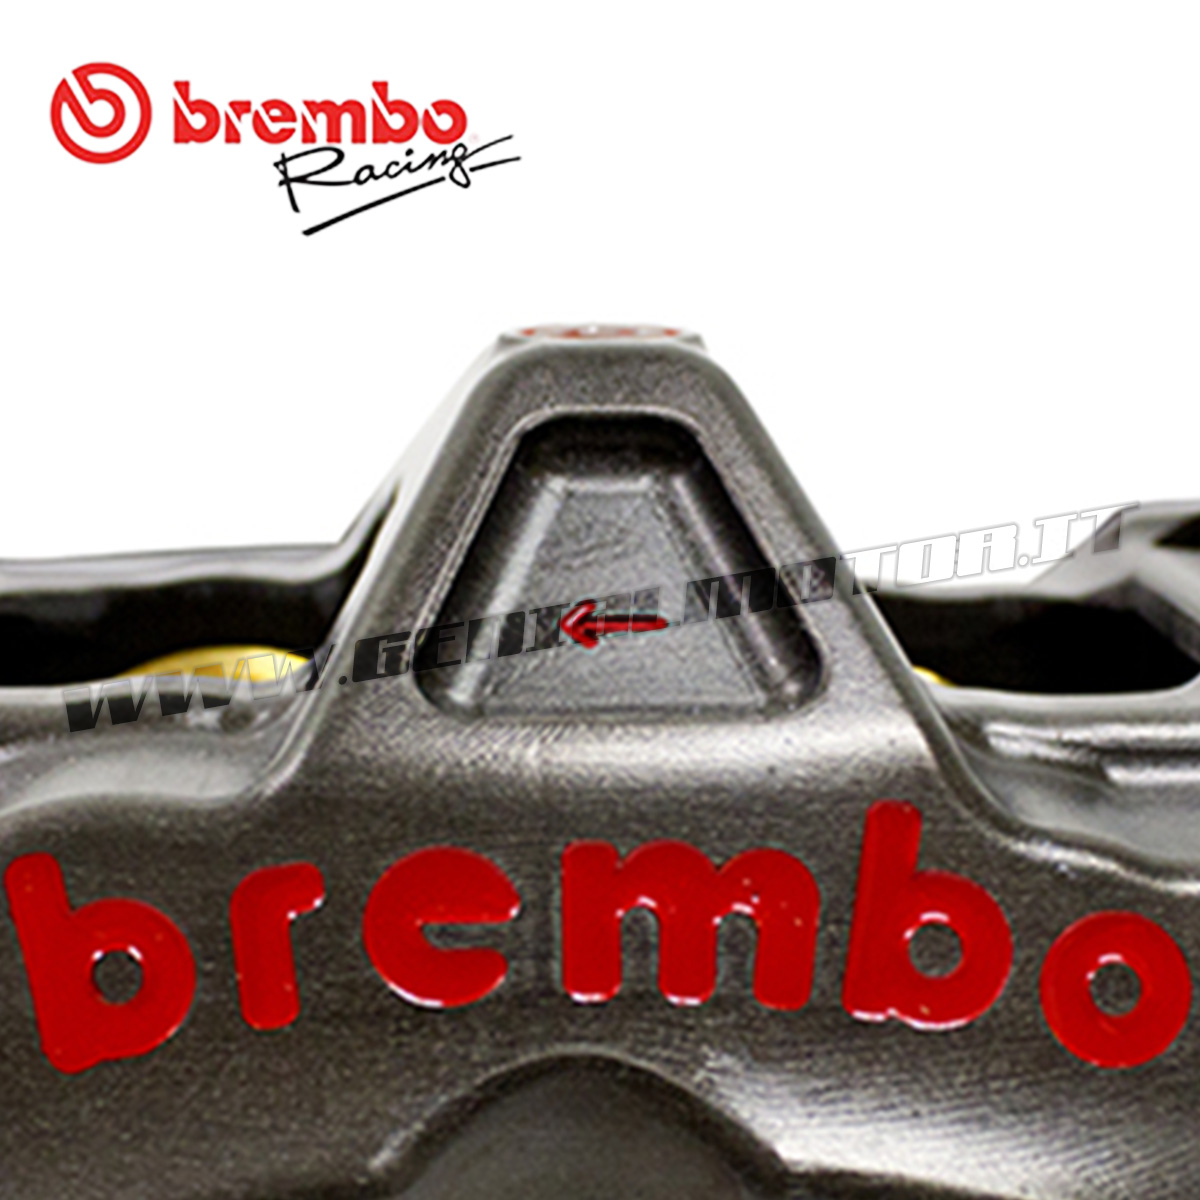 Pinza de Freno Delantero Radial Brembo Racing izquierda monobloque CNC P4-30/34 sin Pastillas 